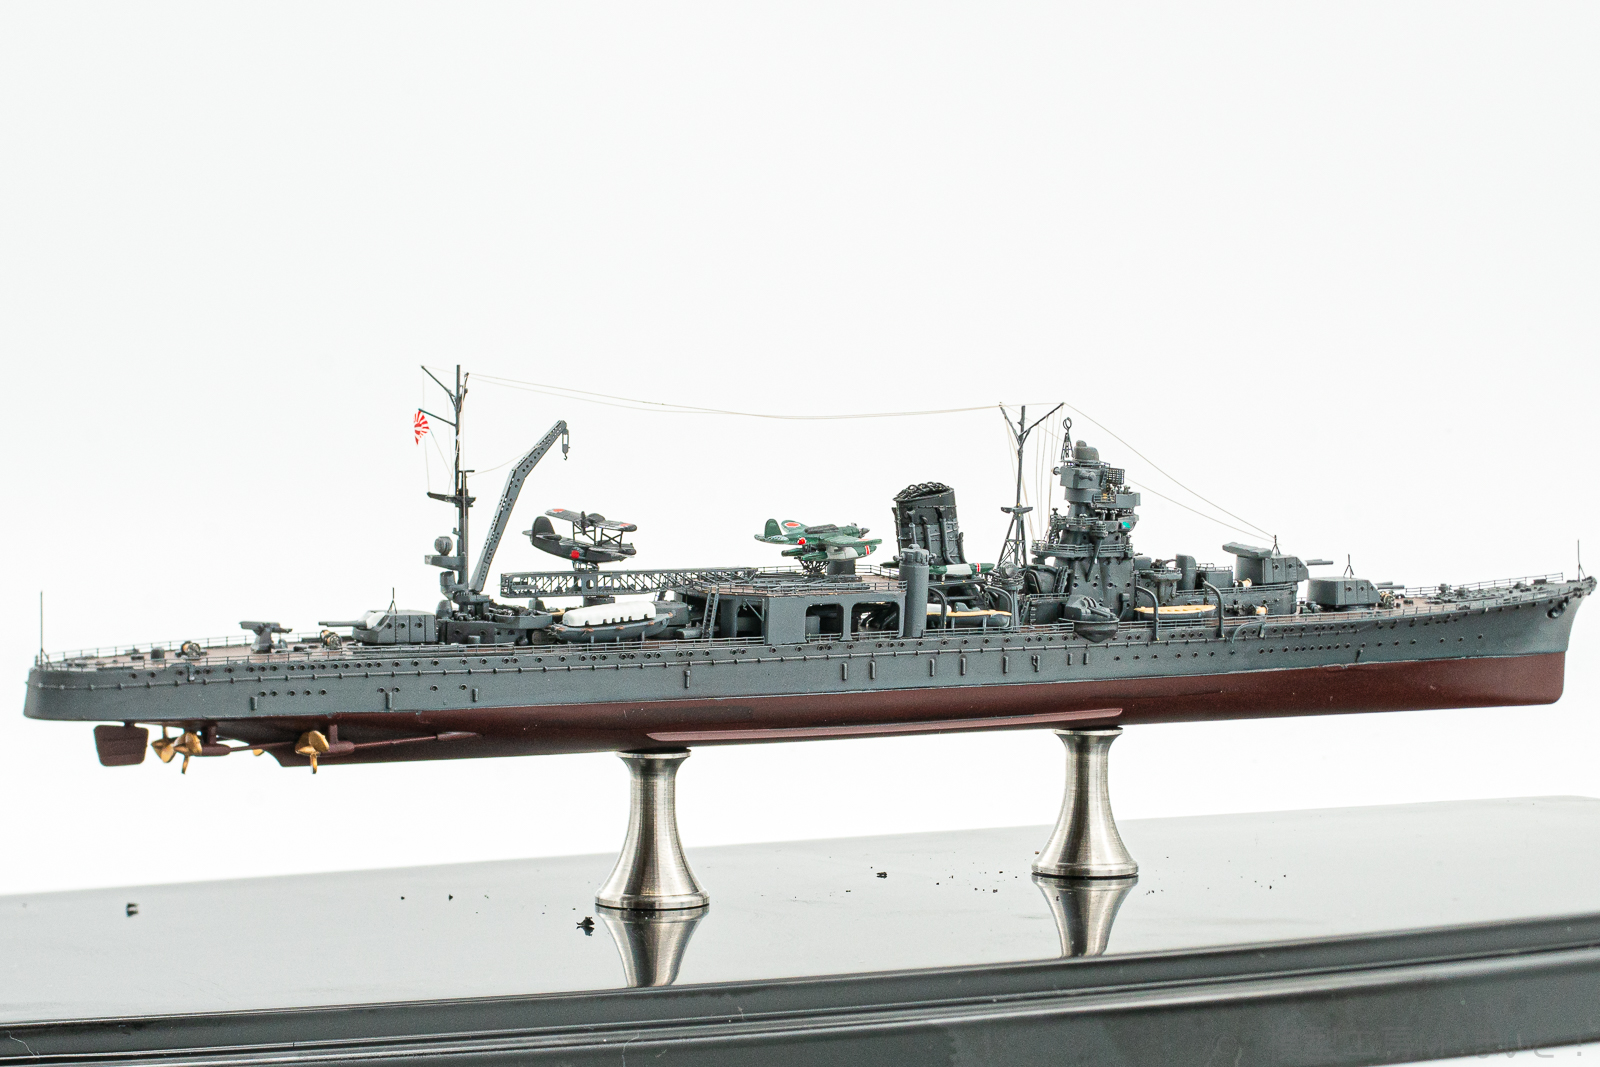 【絶版レア商品 新品未開封】ピットロード 1/700 日本海軍軽巡洋艦 阿賀野